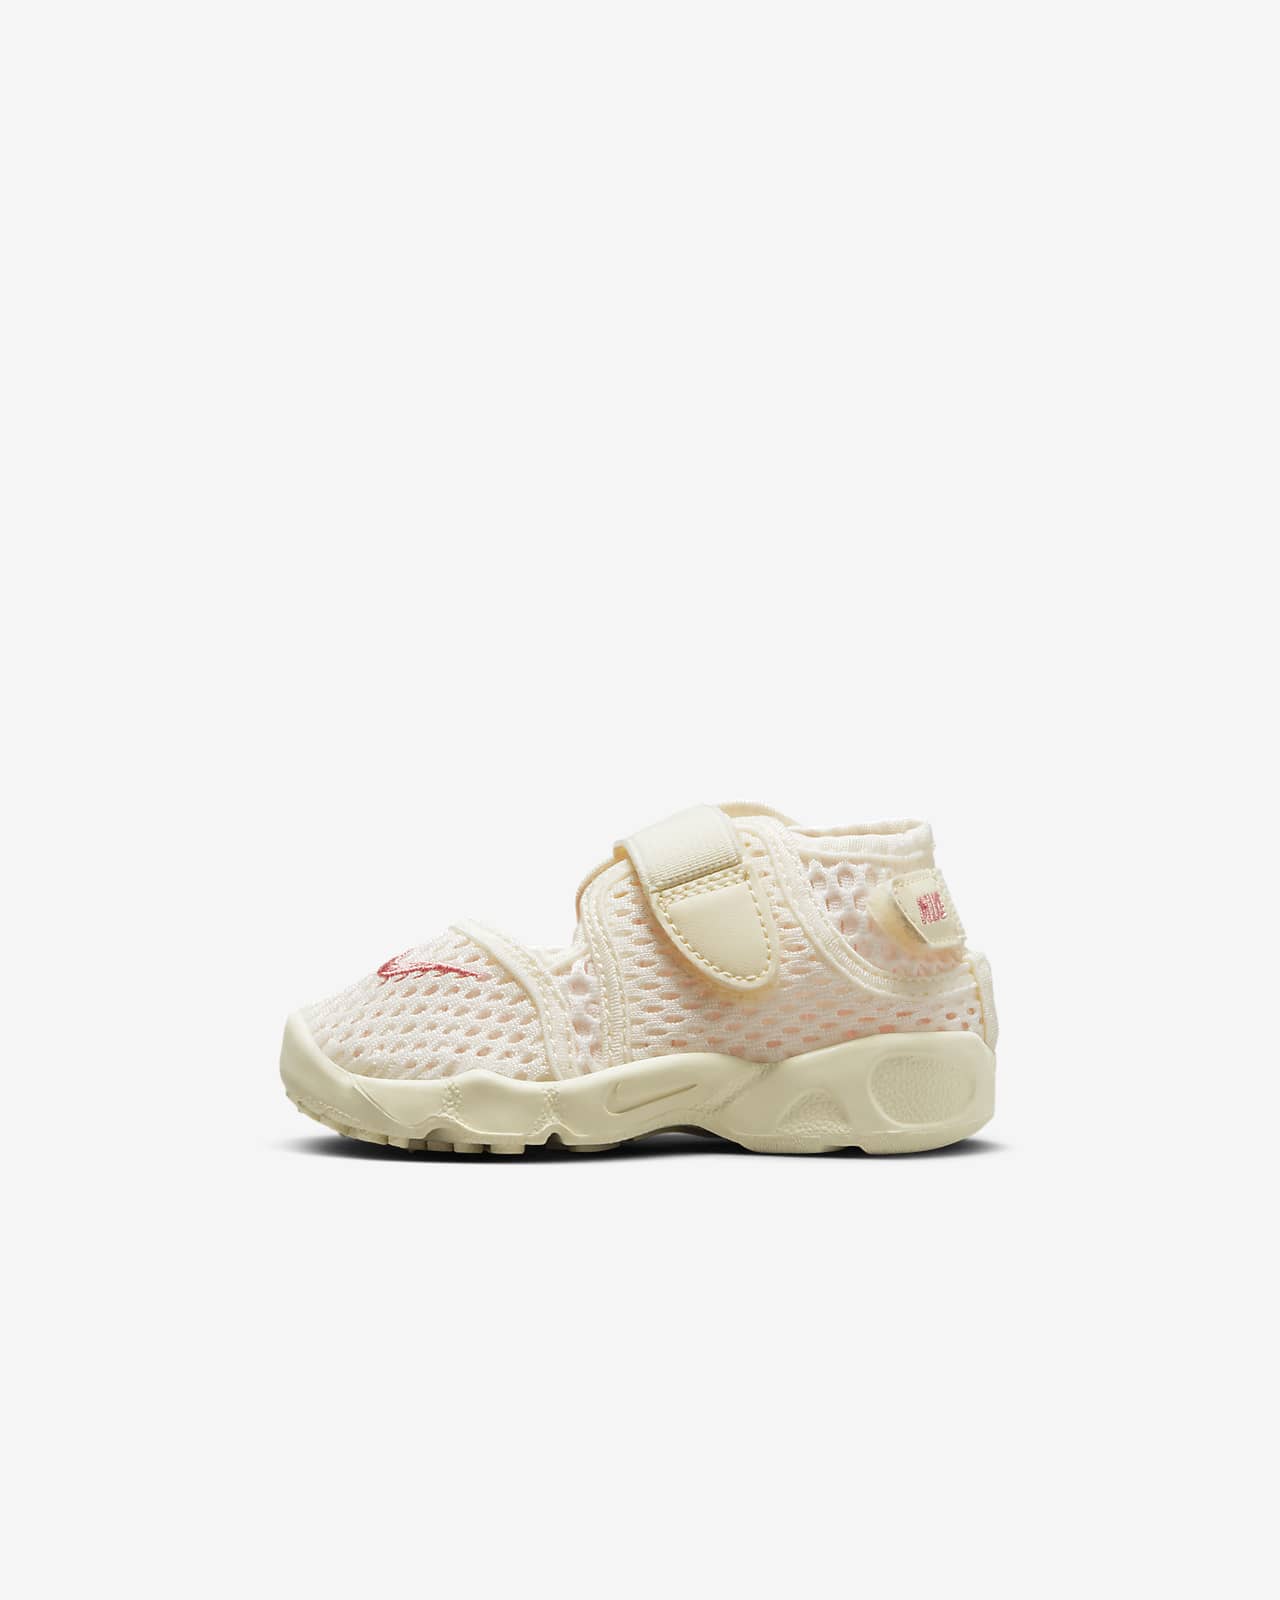 Nike Rift 2 Baby/Toddler Shoes